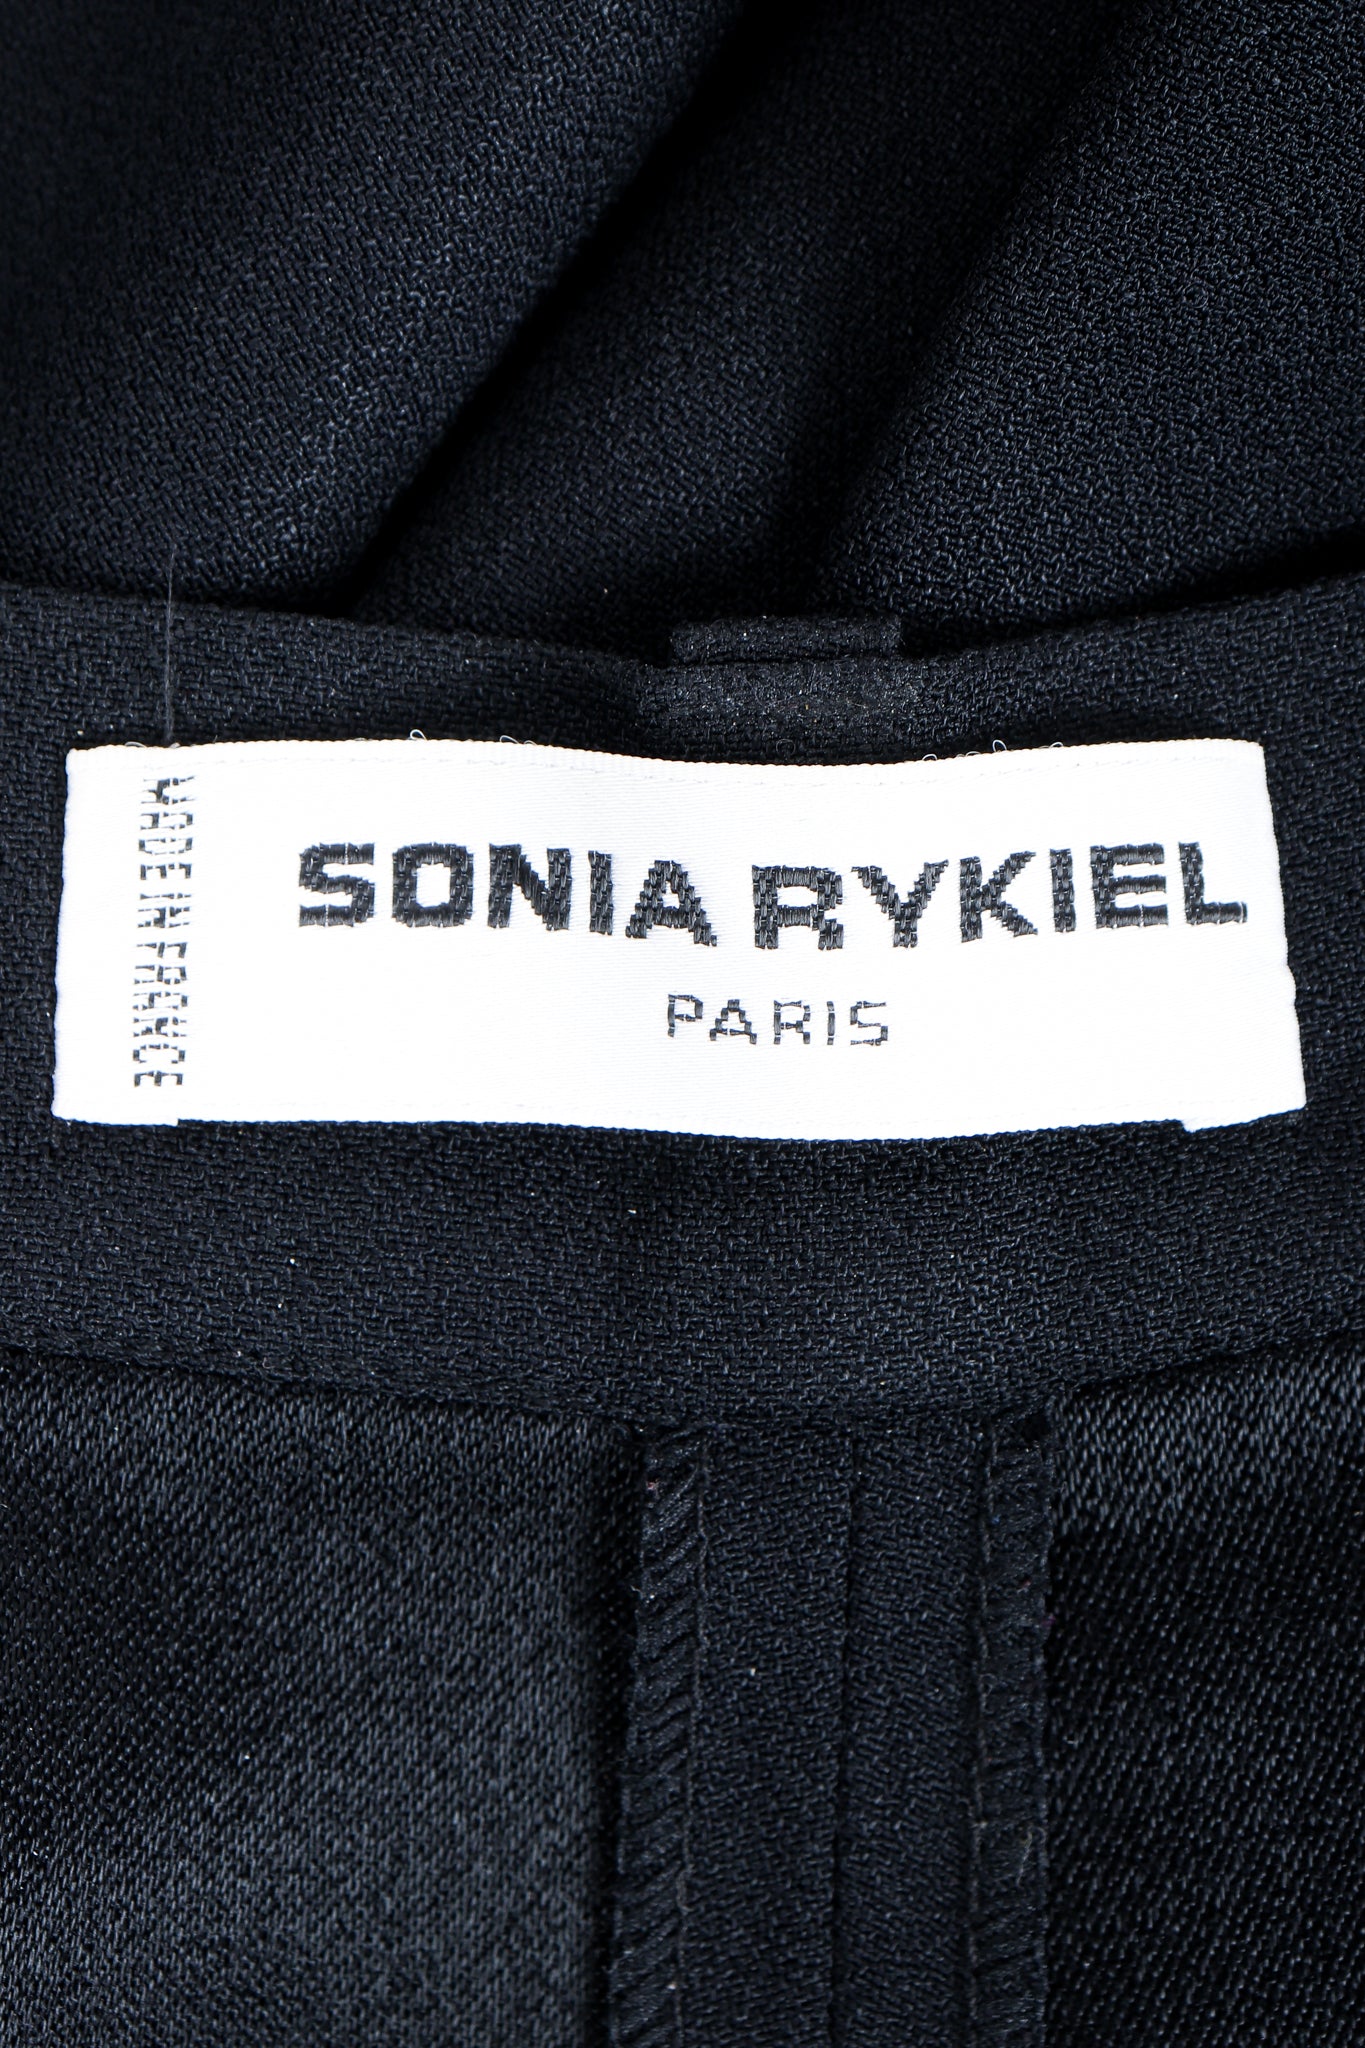 Vintage Sonia Rykiel Crepe Pant Set label on black fabric